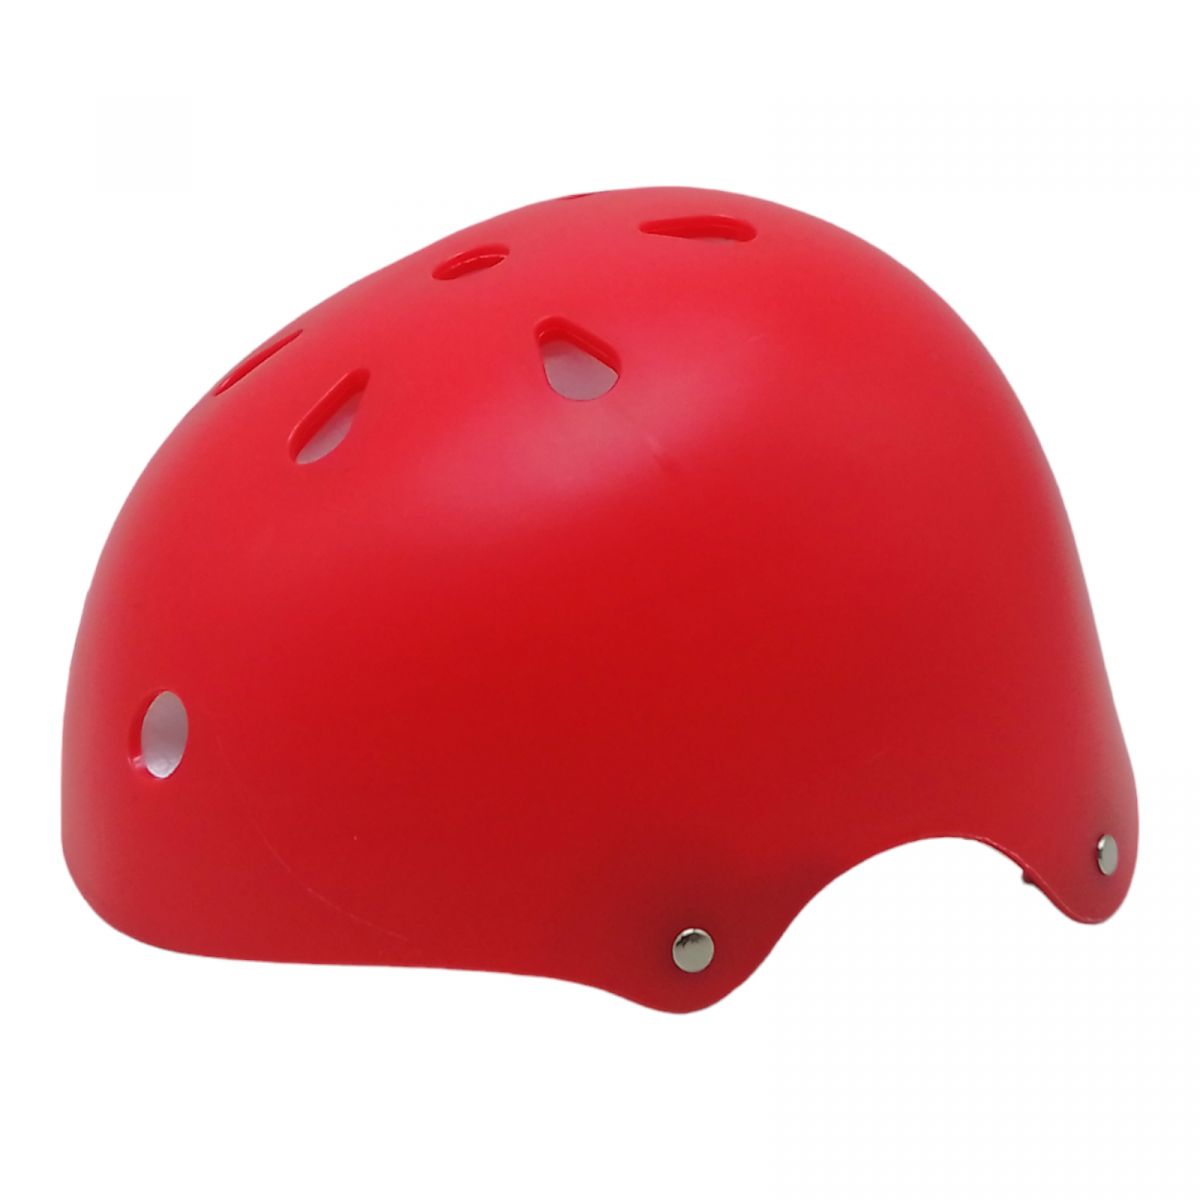 Шлем защитный для спорта (красный )